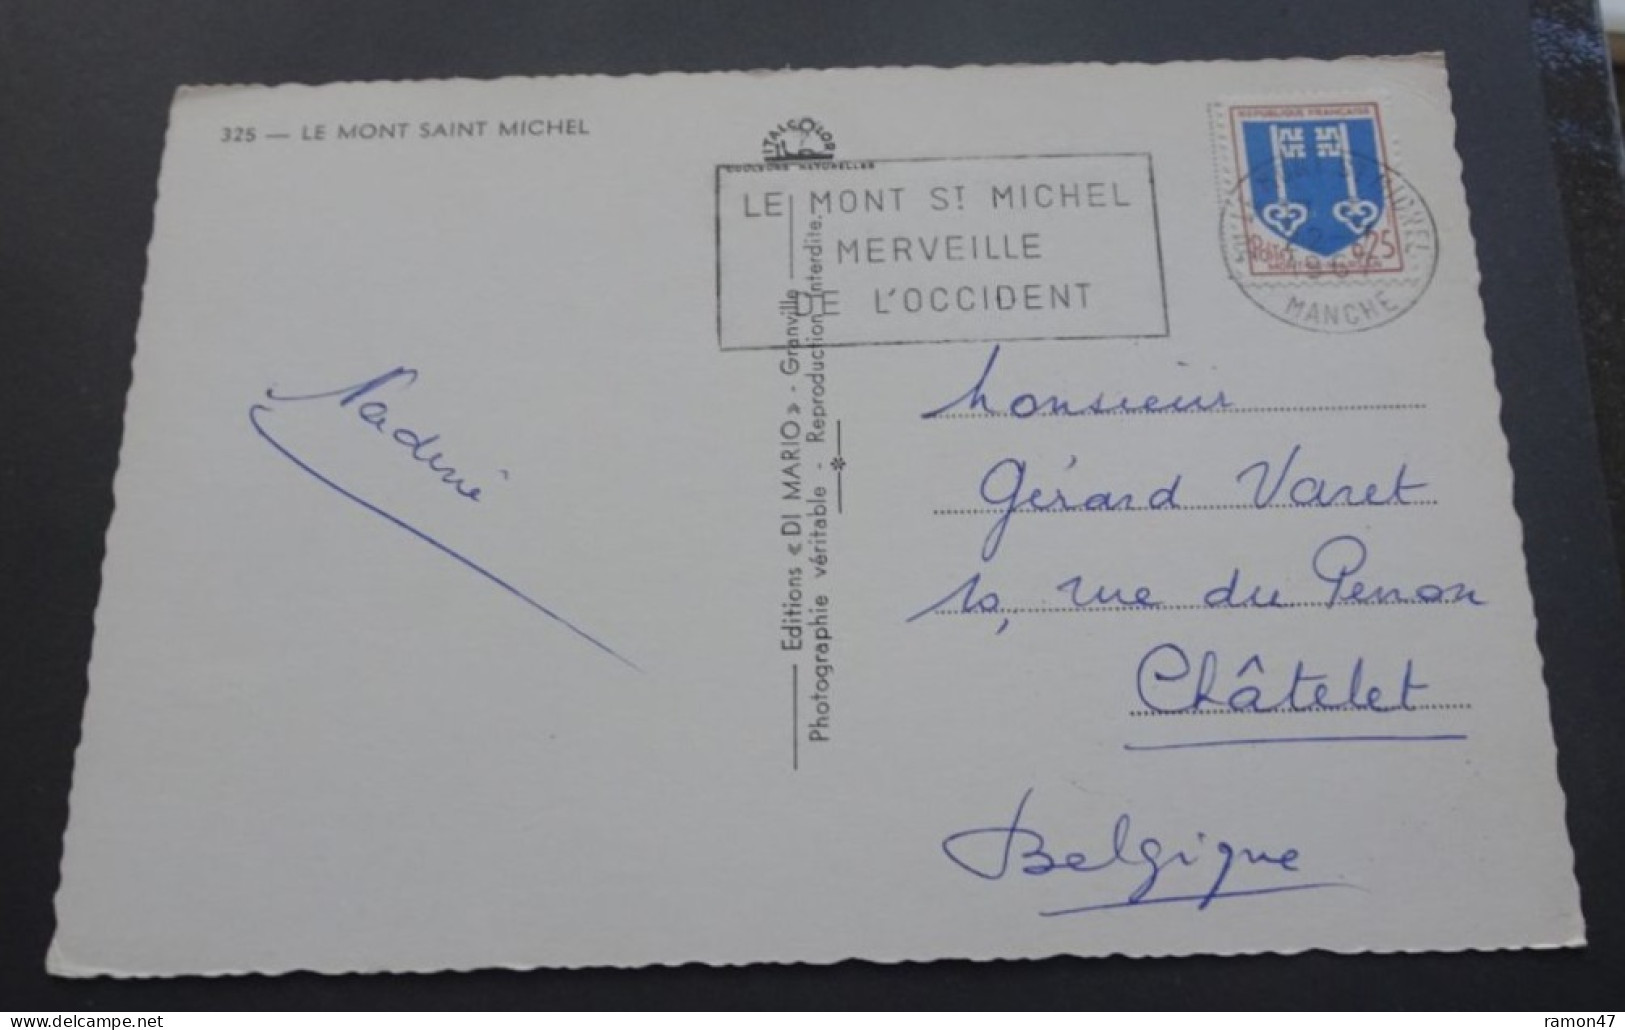 Le Mont Saint Michel - Editions "DI MARIO", Granville - Le Mont Saint Michel